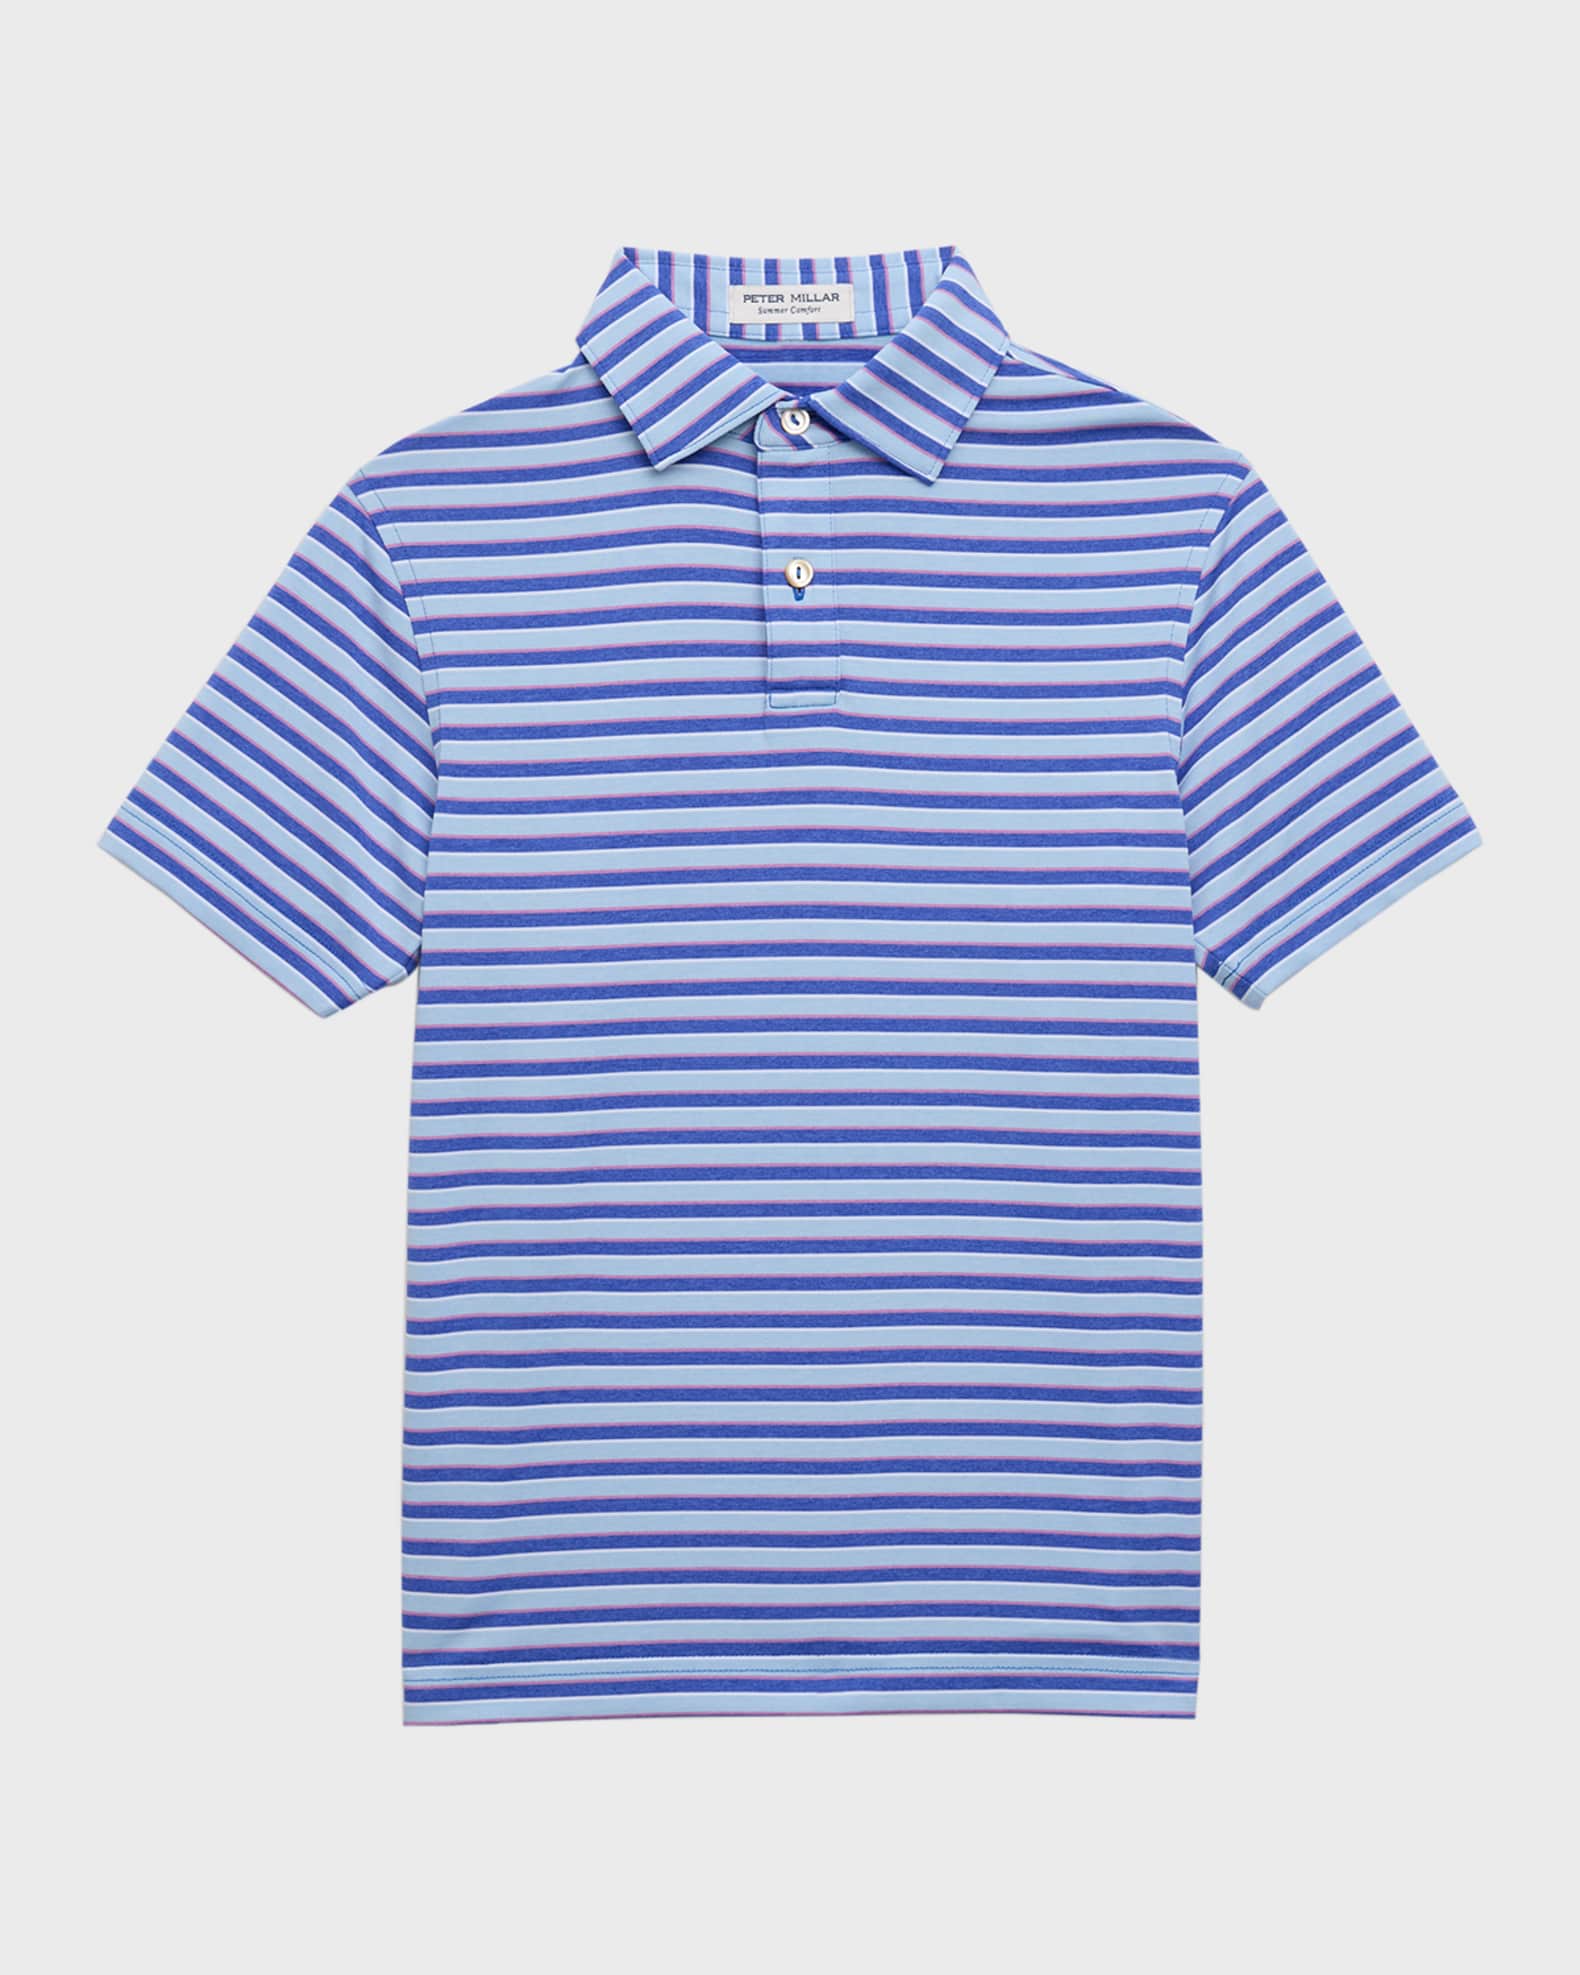 Louis Vuitton Monogram Wave T-Shirt Blue. Size Xs